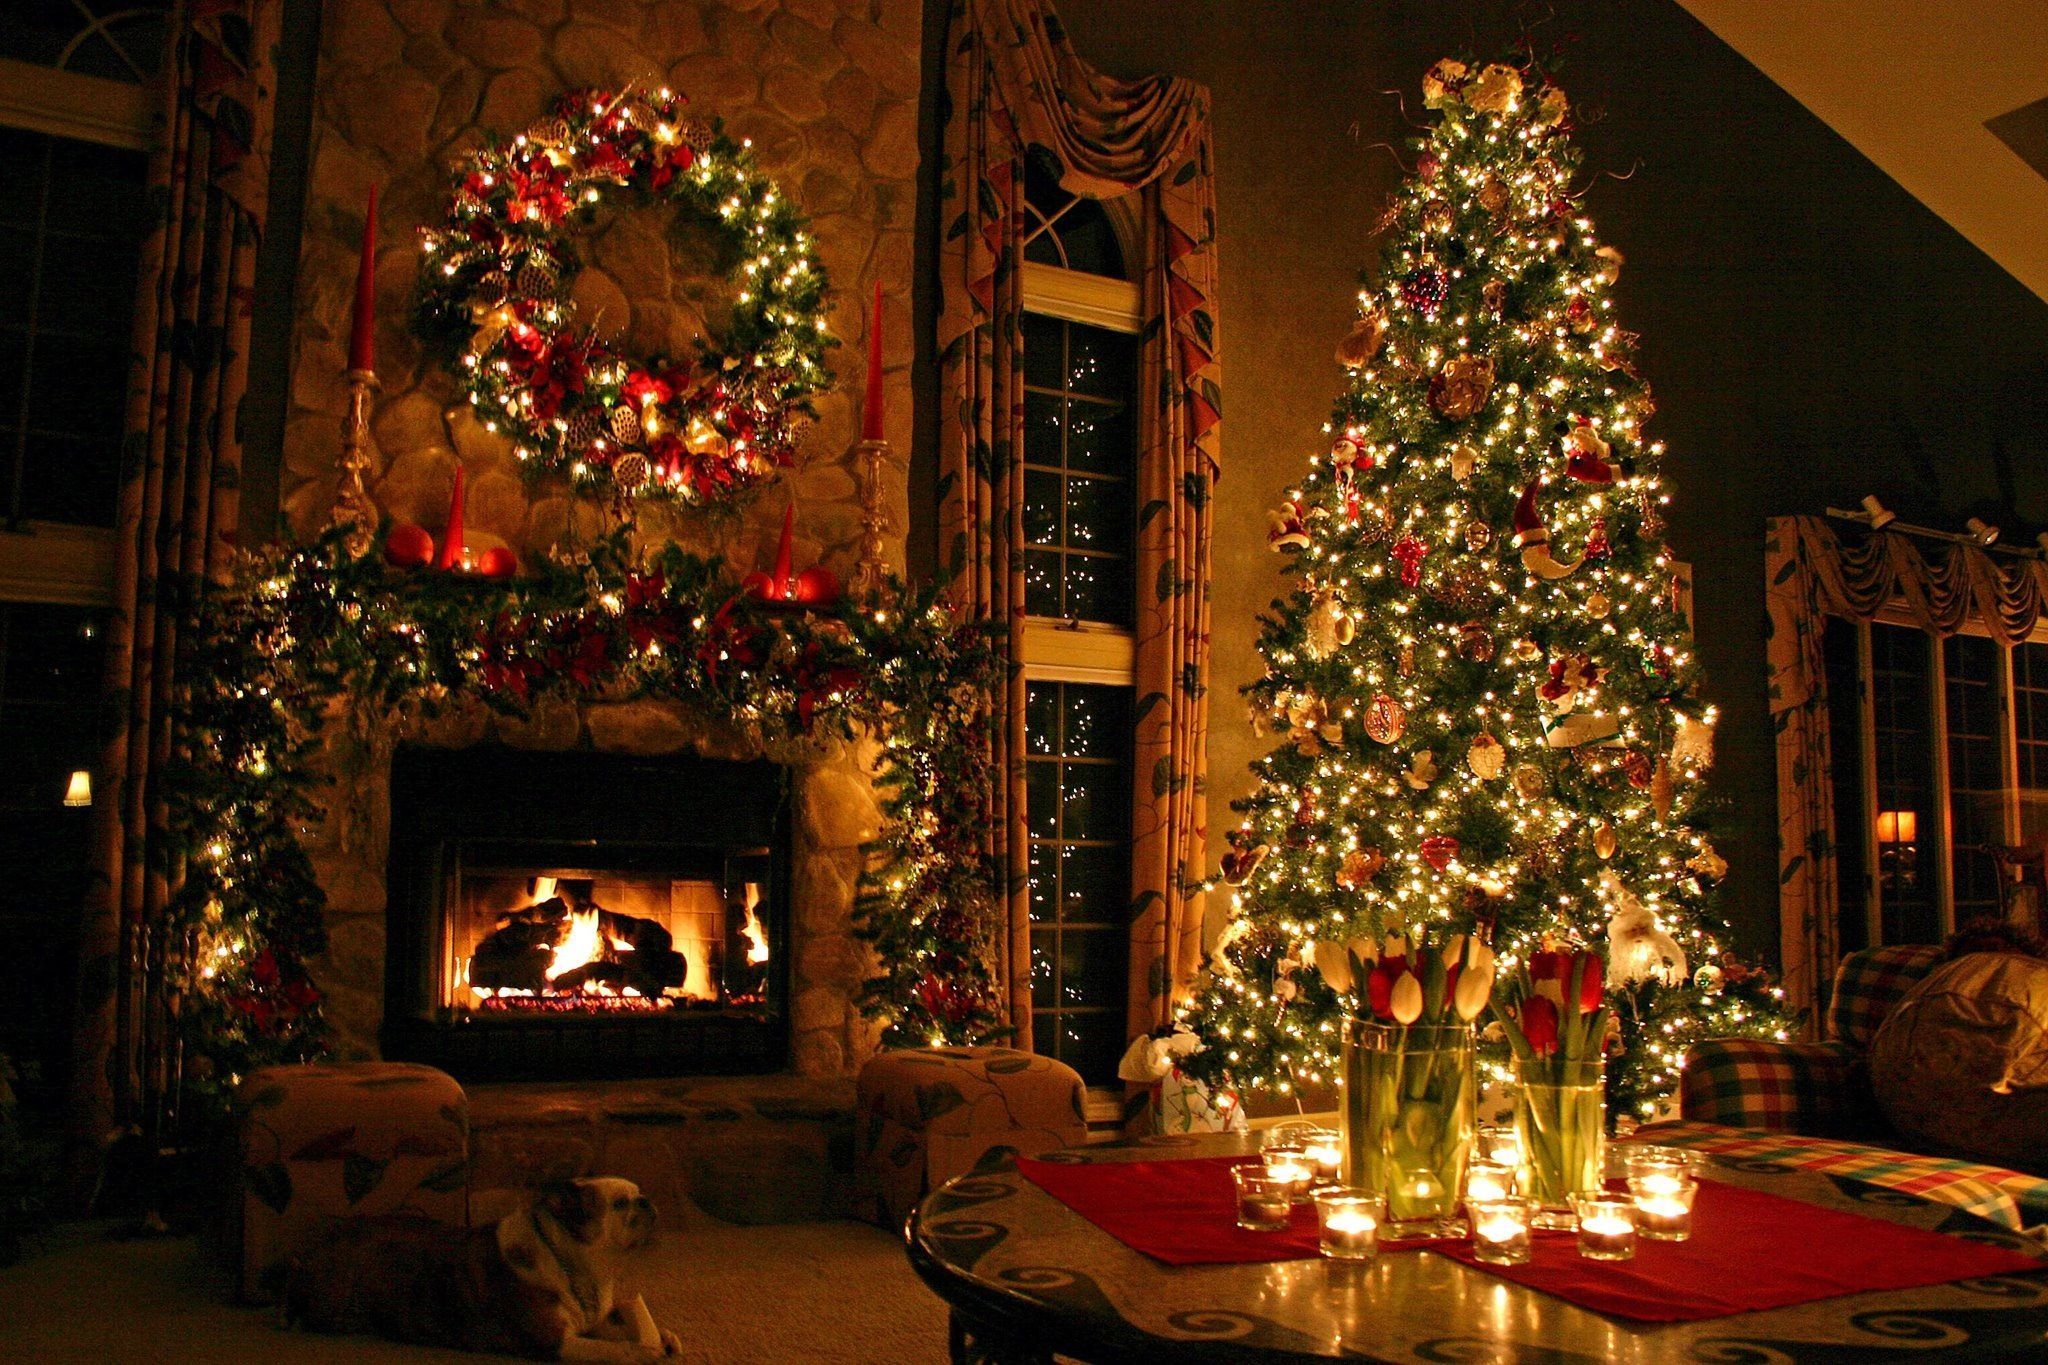 My Christmas. Christmas desktop, Christmas fireplace, Beautiful christmas trees